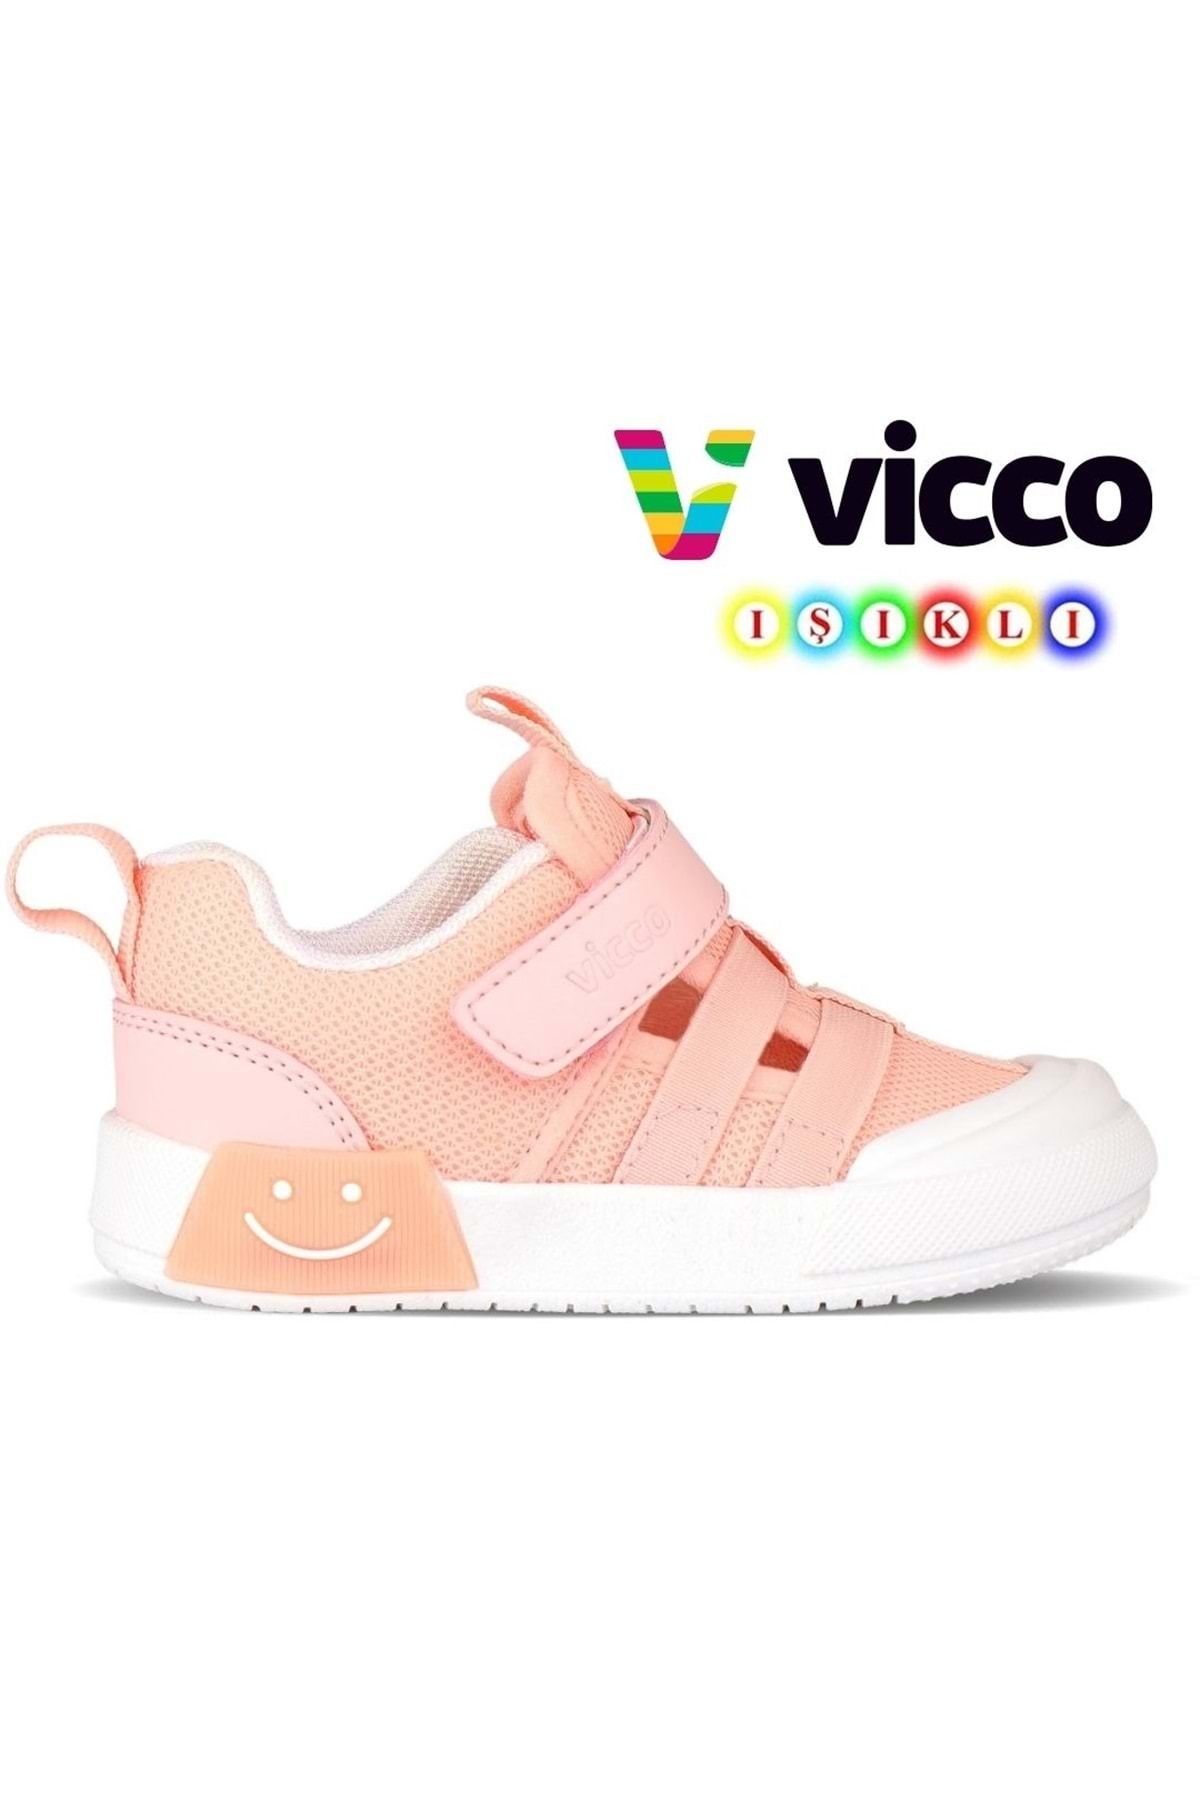 Kids Club Shoes Vicco Momo Işıklı Ortopedik Çocuk Spor Ayakkabı PUDRA